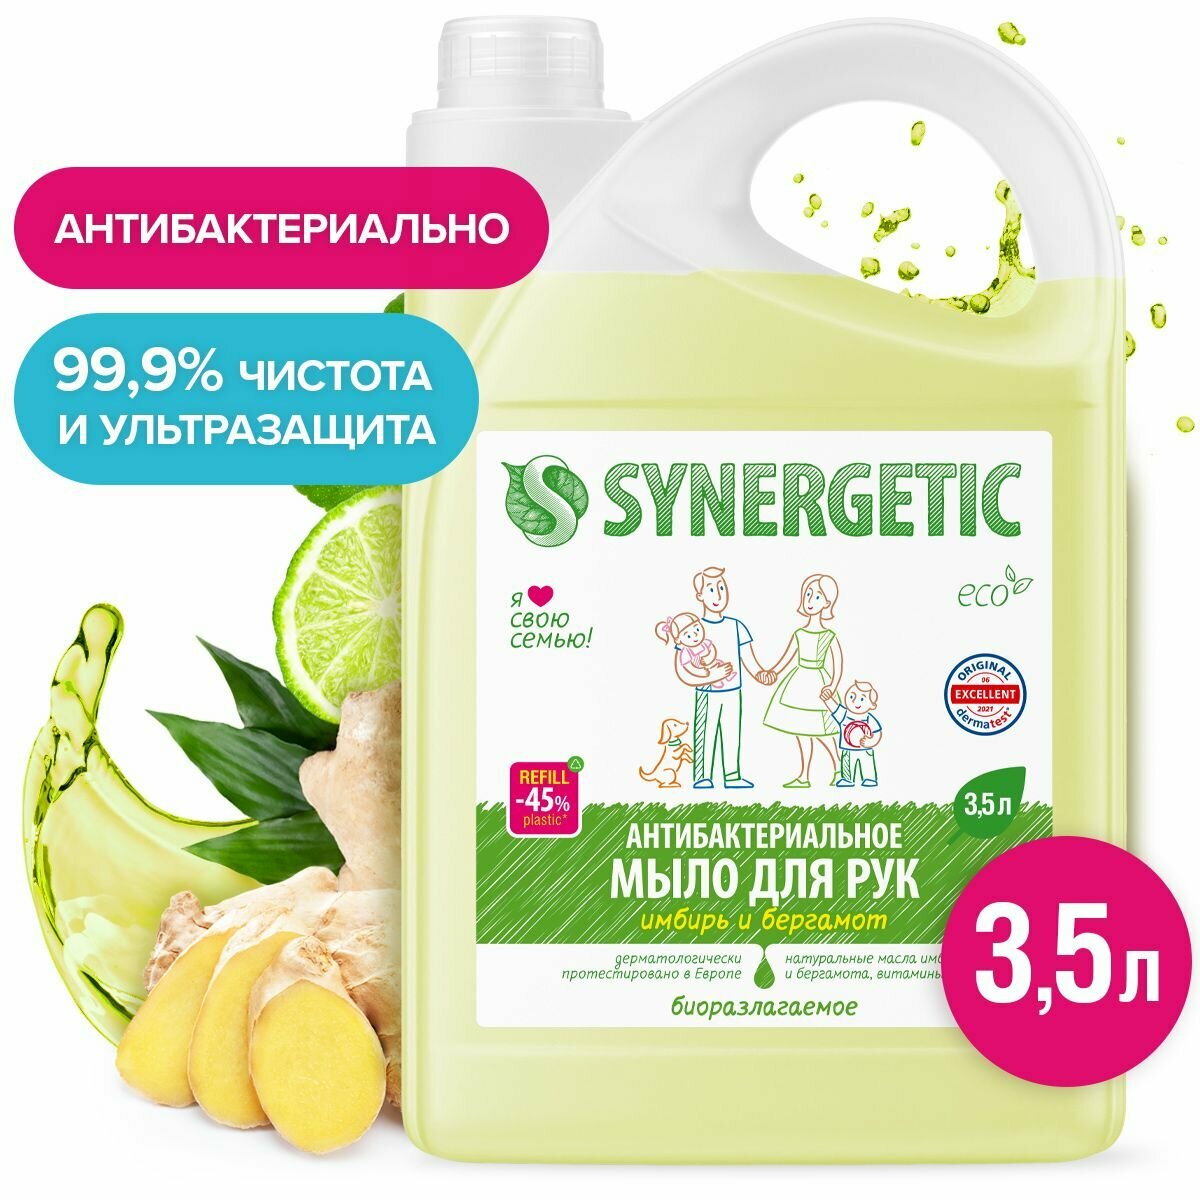 Жидкое мыло SYNERGETIC "Имбирь и бергамот" антибактериальное, с эффектом увлажнения, 3,5л (литра)